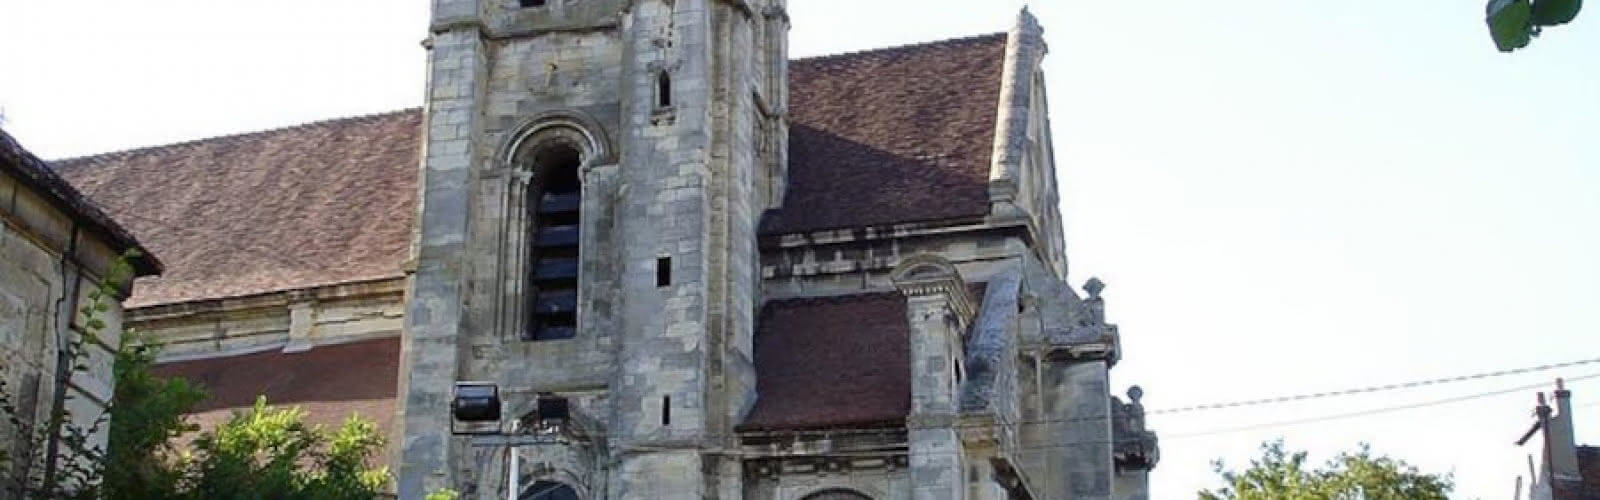 Eglise du Vieux Goussainville